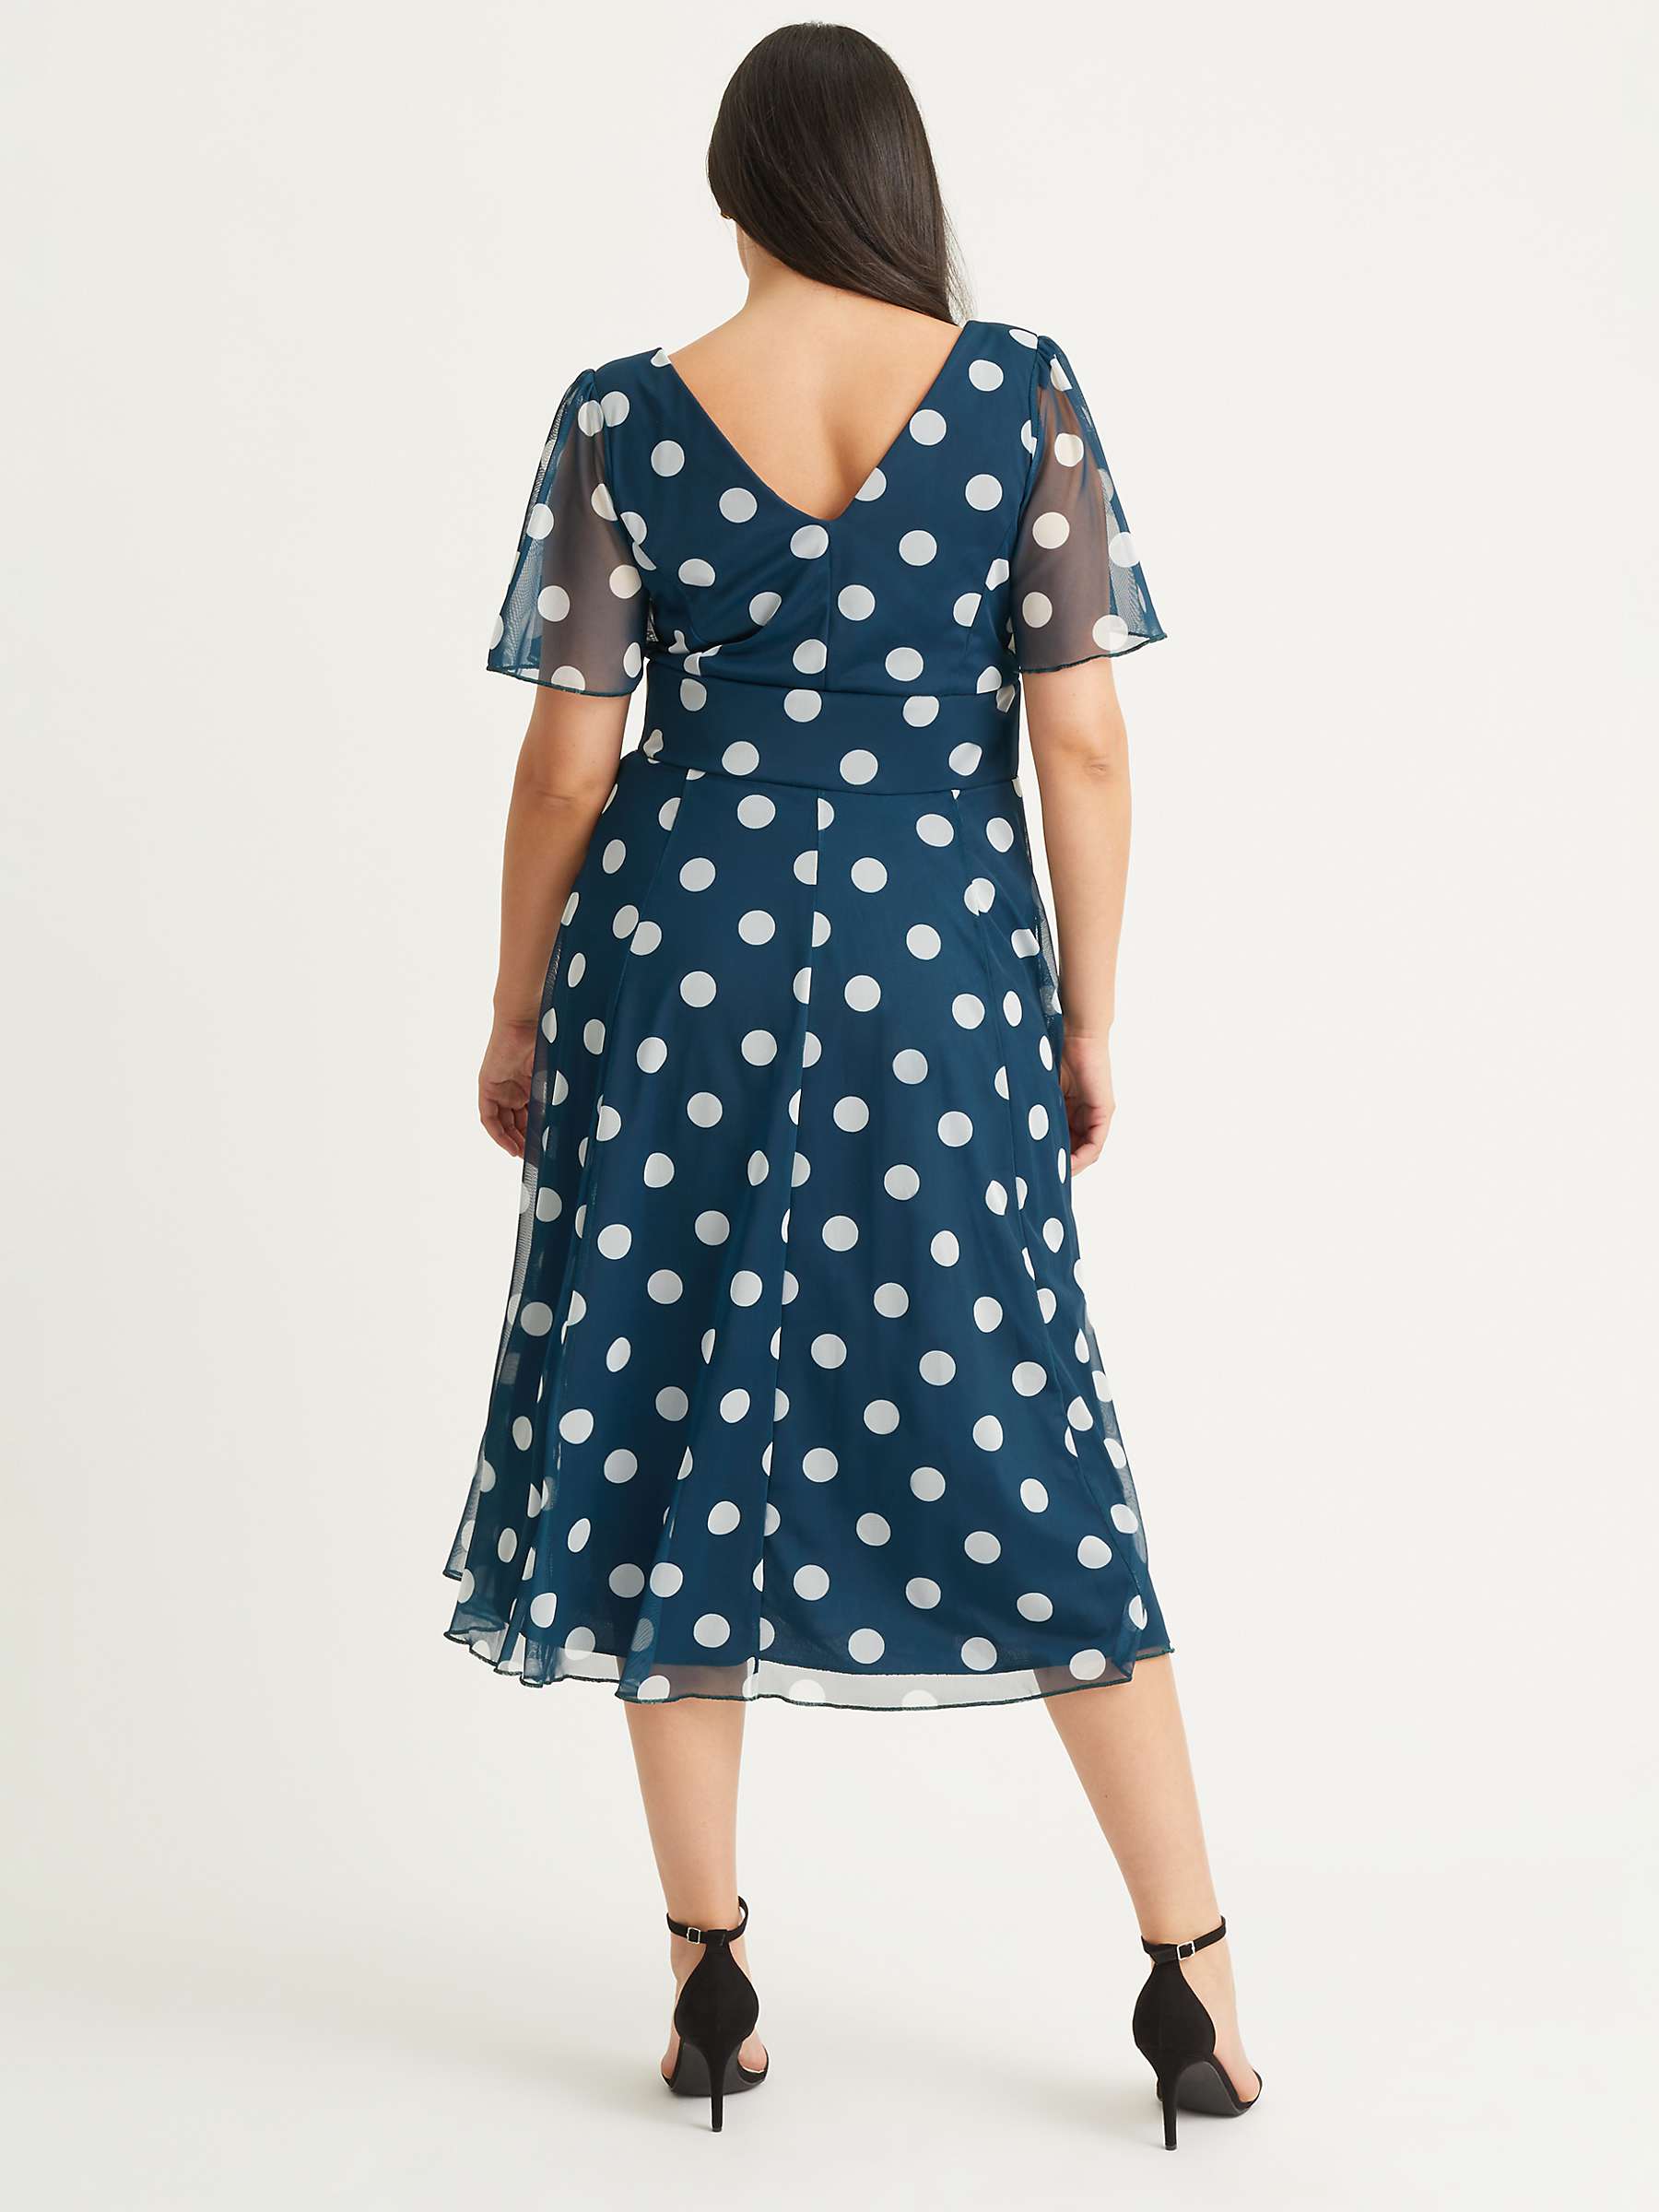 Scarlett & Jo Victoria Spot Print Midi Dress, Teal at John Lewis & Partners